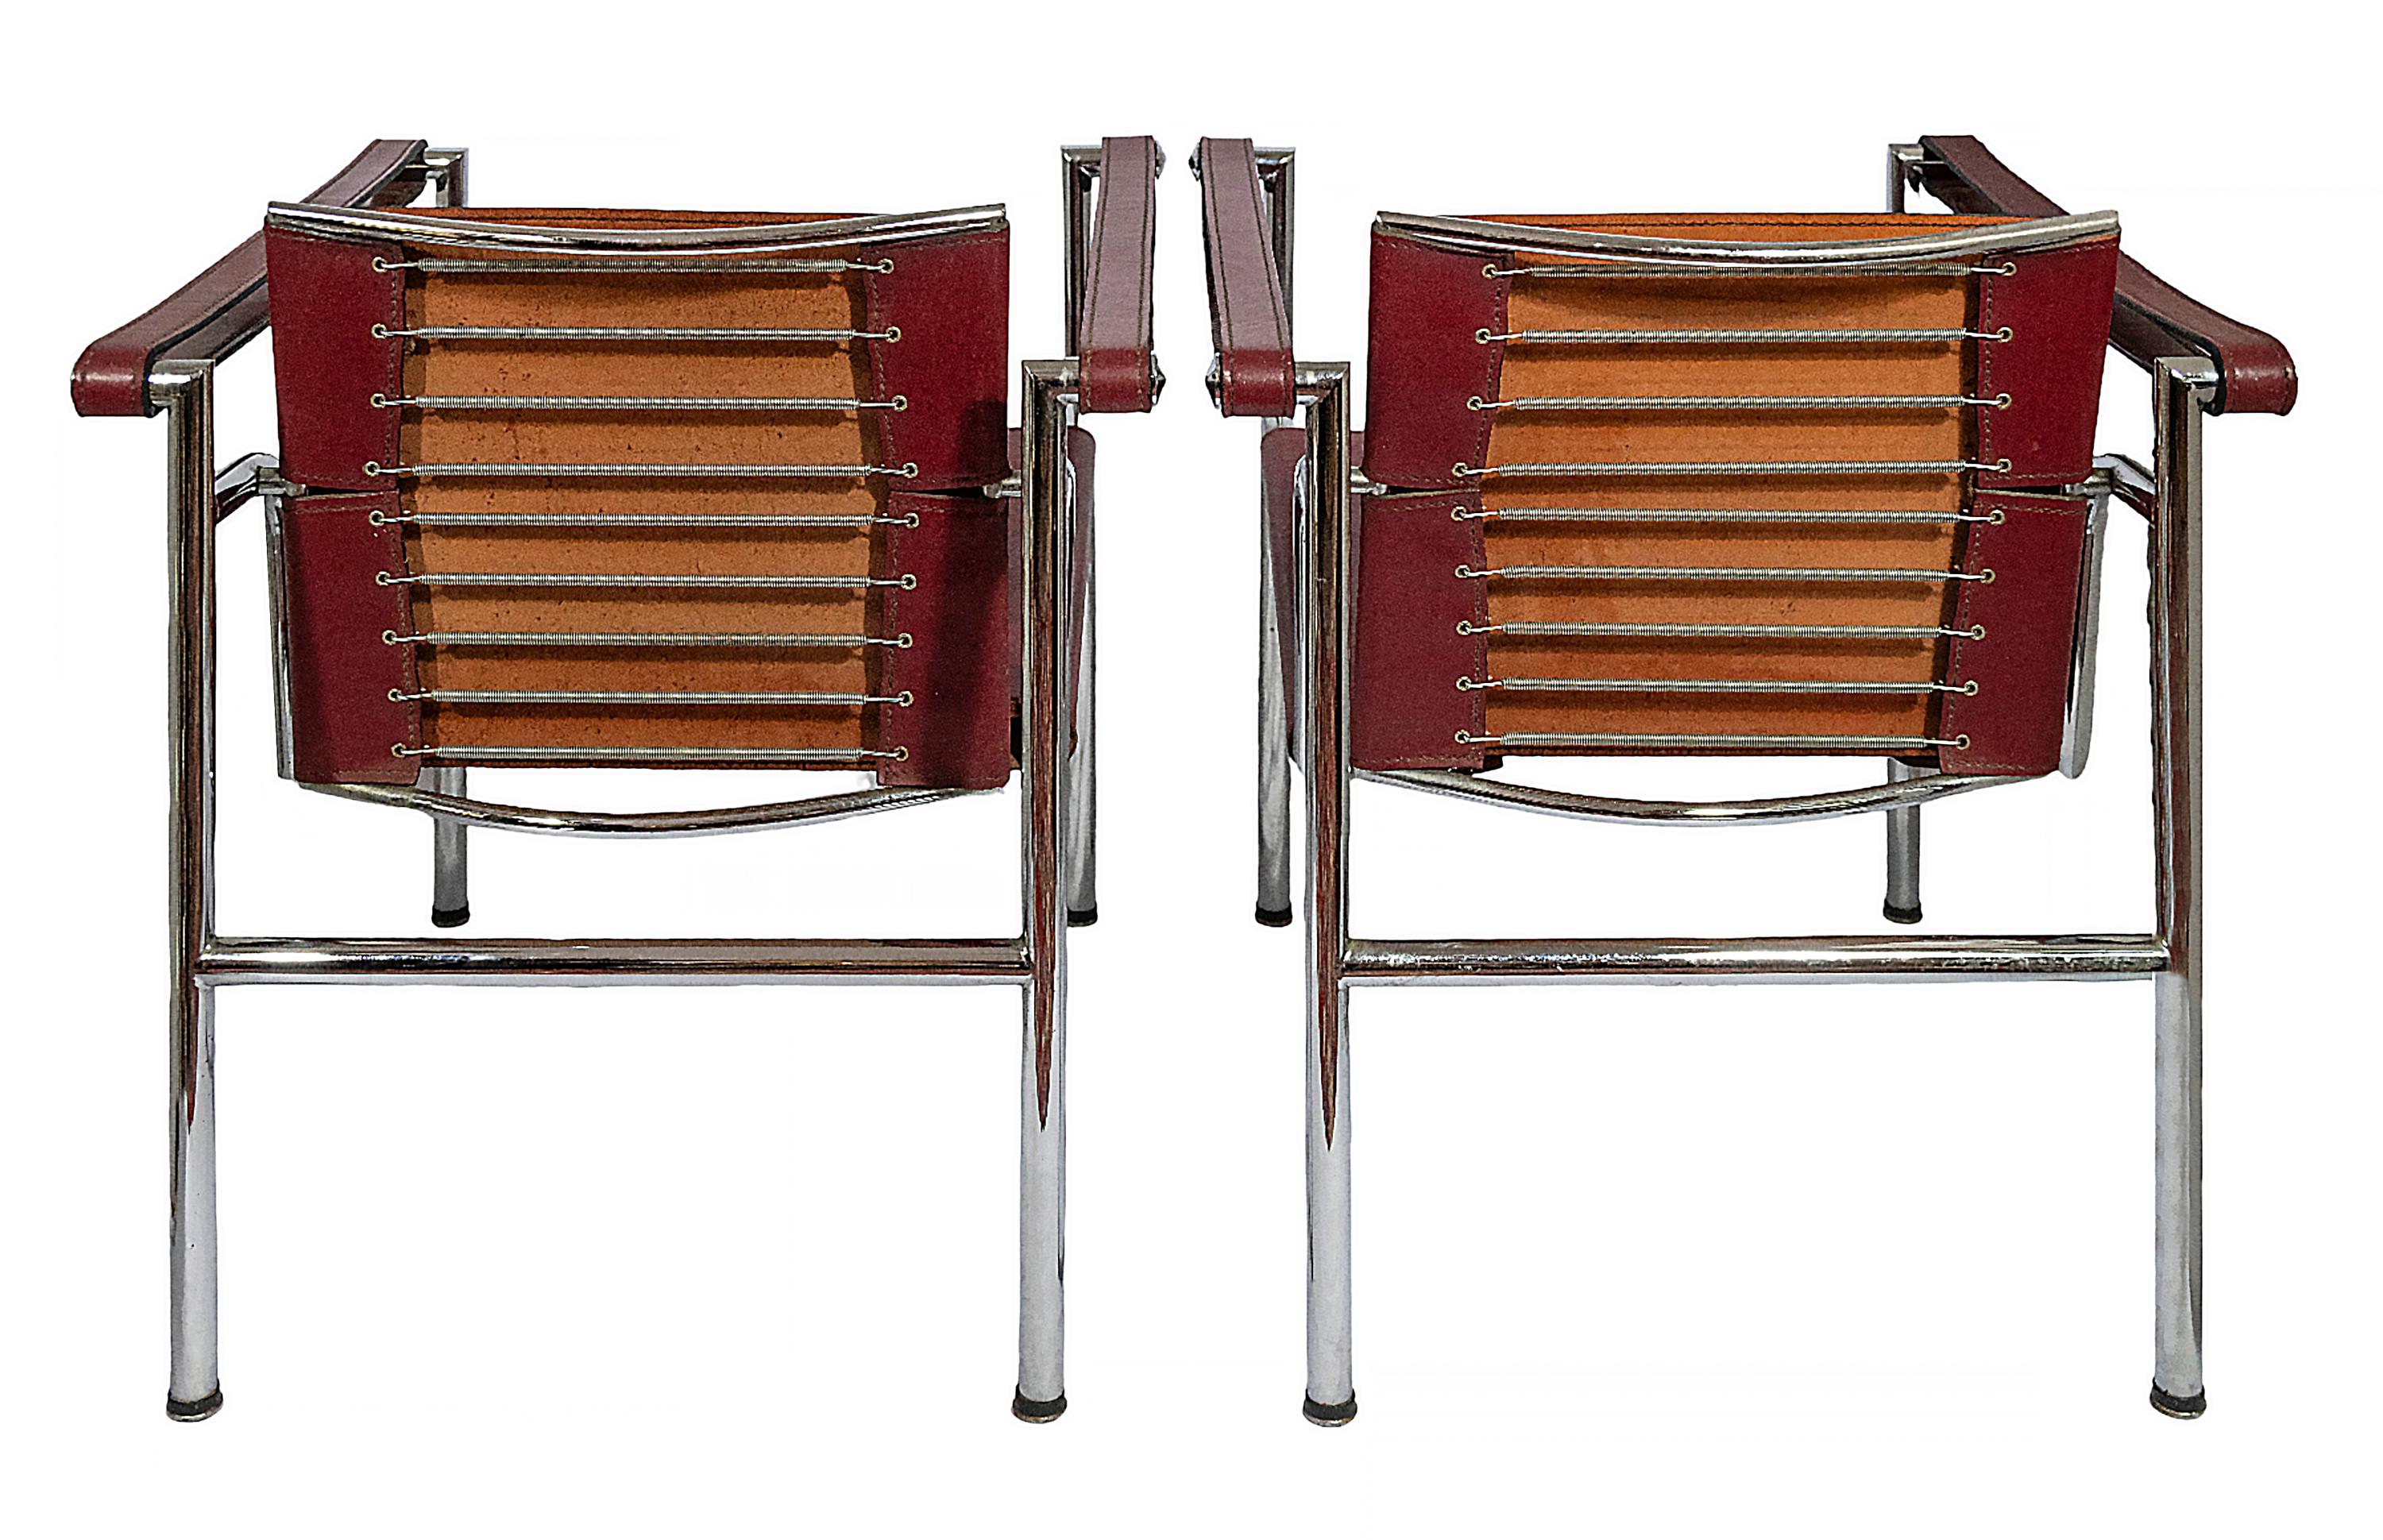 Paire de chaises vintage LC1 conçues par Le Corbusier vers les années 1928.
Base chromée, revêtement en cuir couleur cerise. 
Numéros marqués sur le cadre, étiqueté Cassina.
Bon état vintage.

 

 